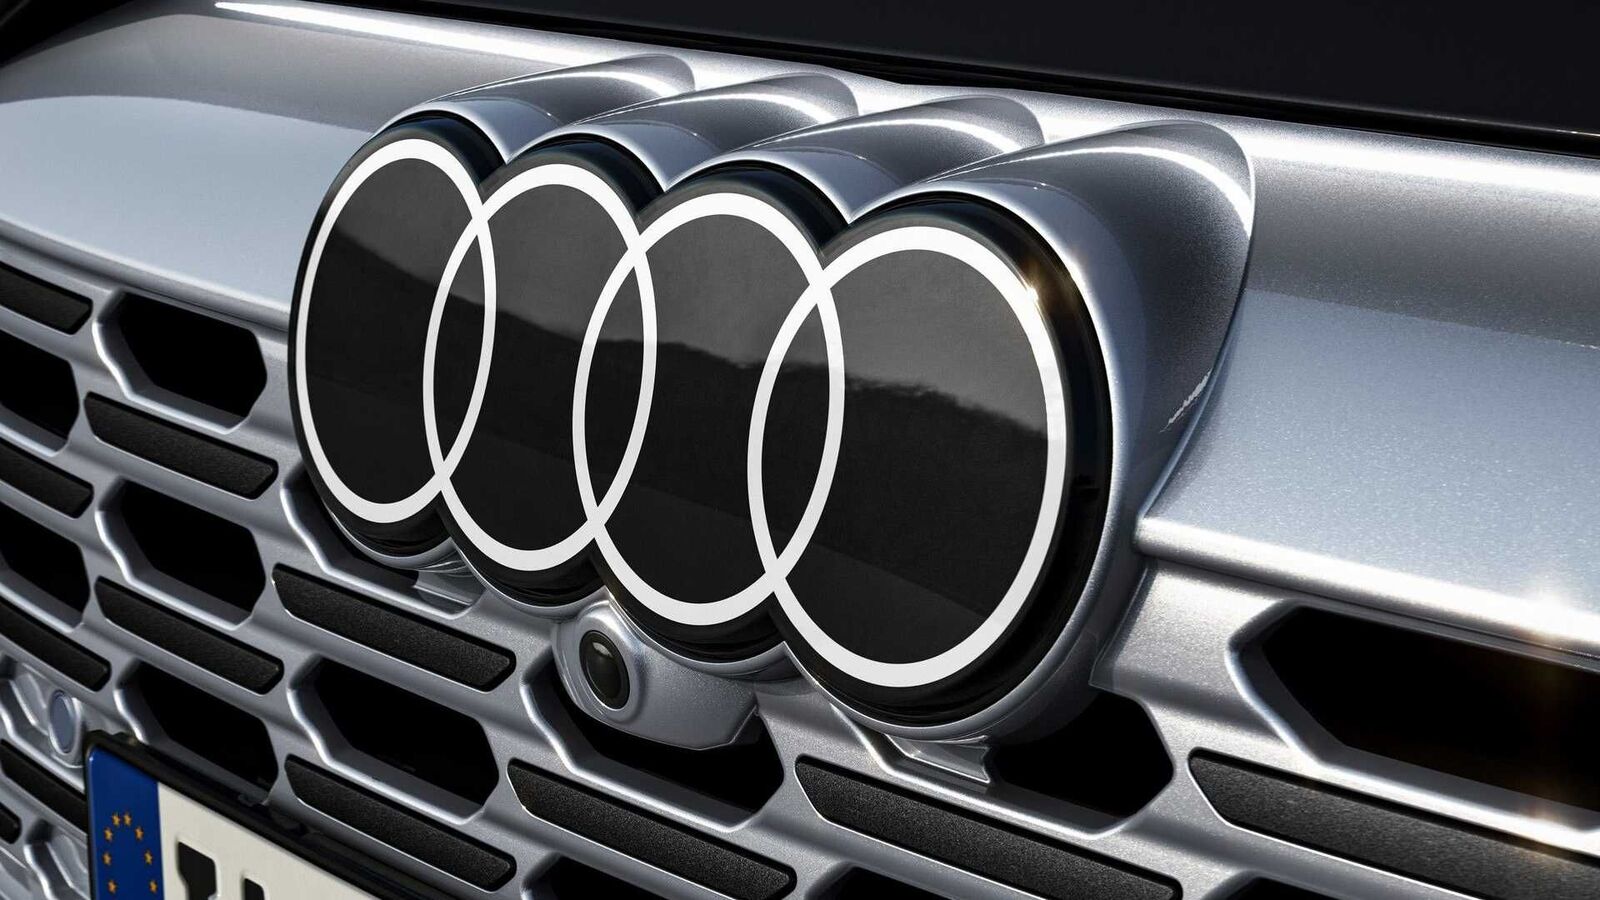 Audi logo gets digitalized makeover, gets a flatter 2D appearance